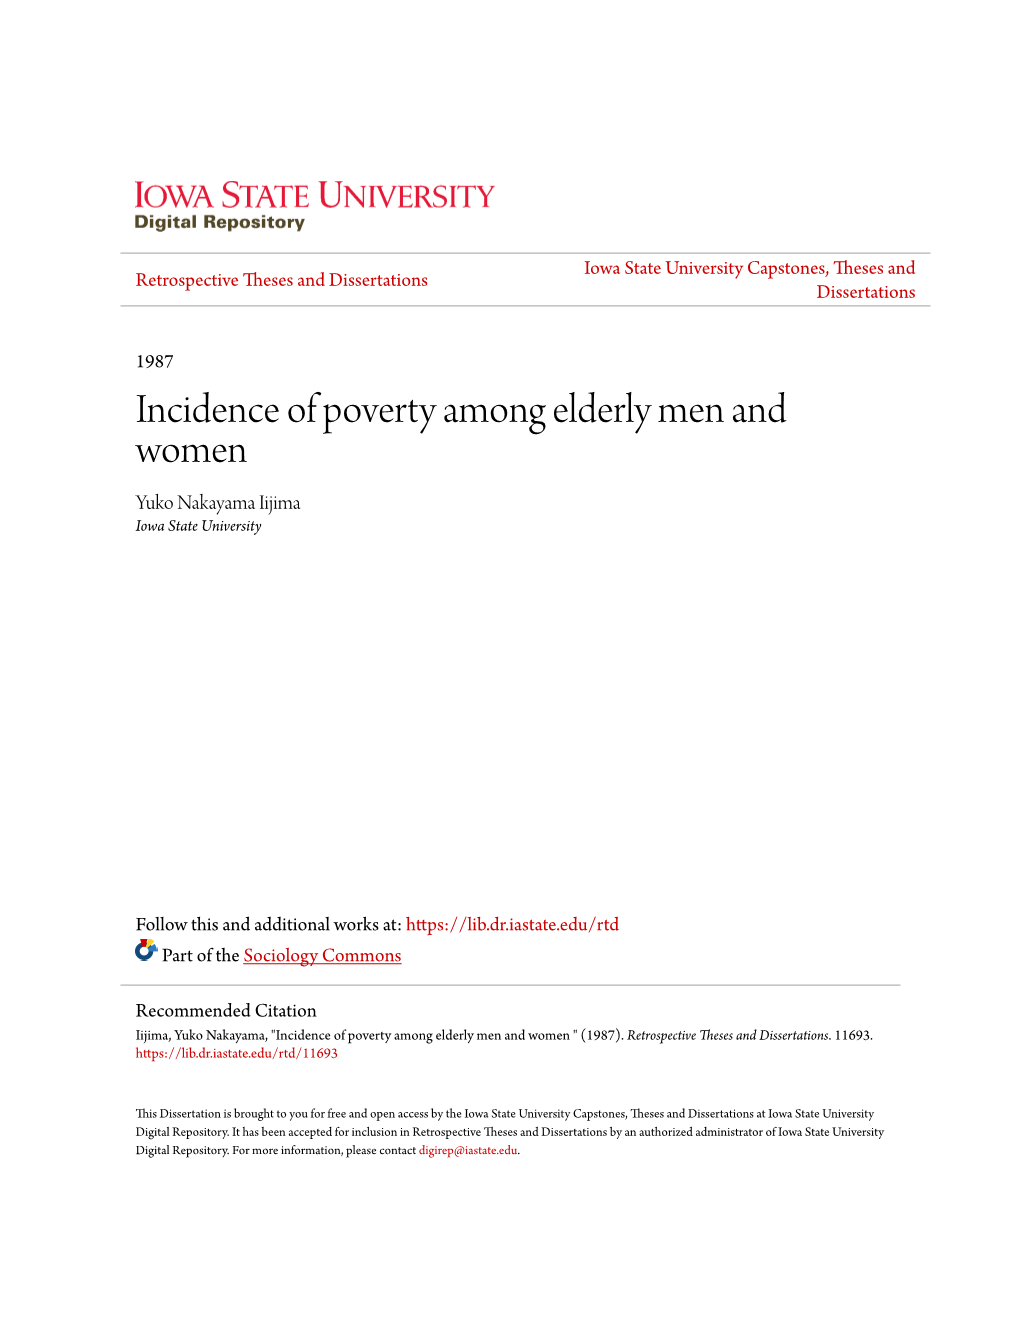 Incidence of Poverty Among Elderly Men and Women Yuko Nakayama Iijima Iowa State University